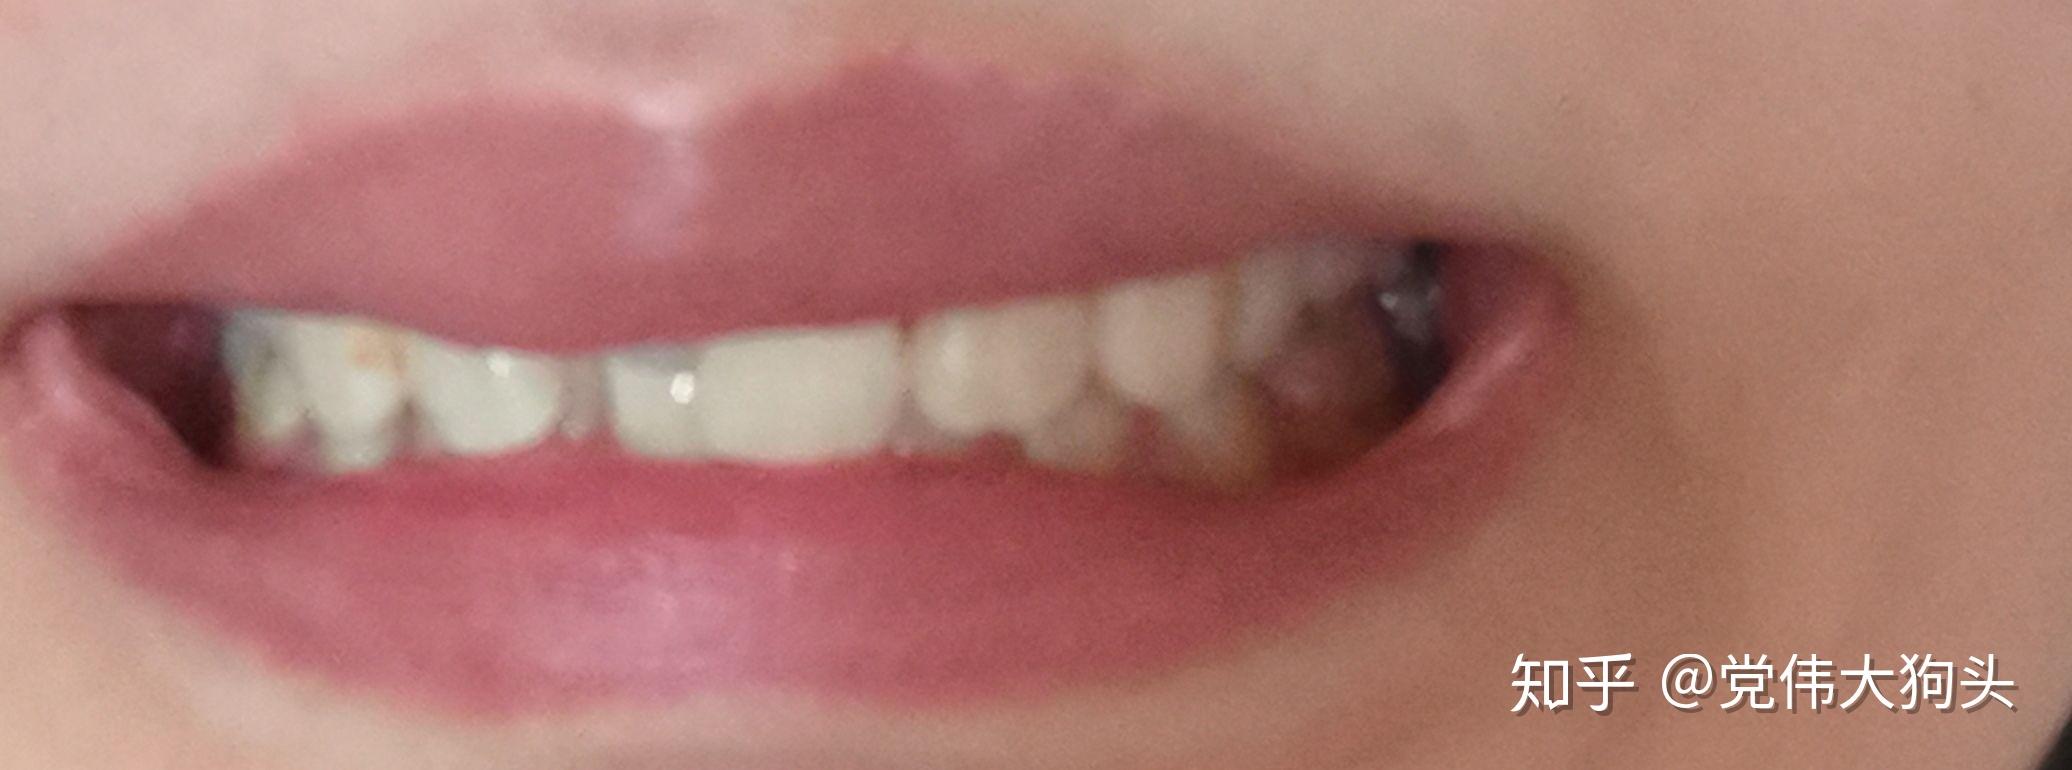 牙齿不齐+右上门牙折断+开唇露齿进行牙齿矫正！ - 哔哩哔哩